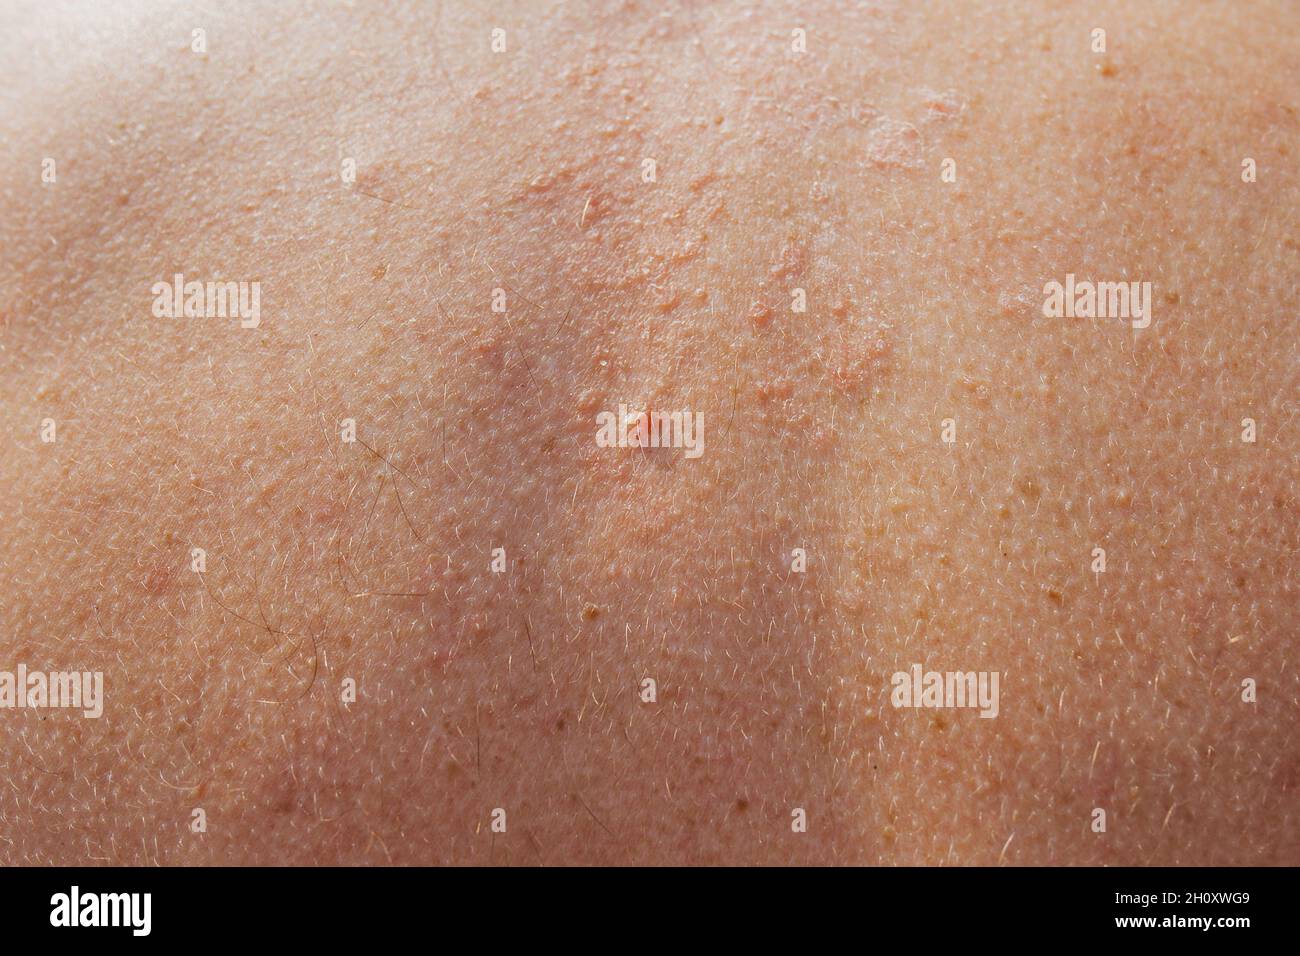 Séborrhée sur la peau du dos - traitement des conditions de la peau dans une station balnéaire - peau sèche et inflammation Banque D'Images